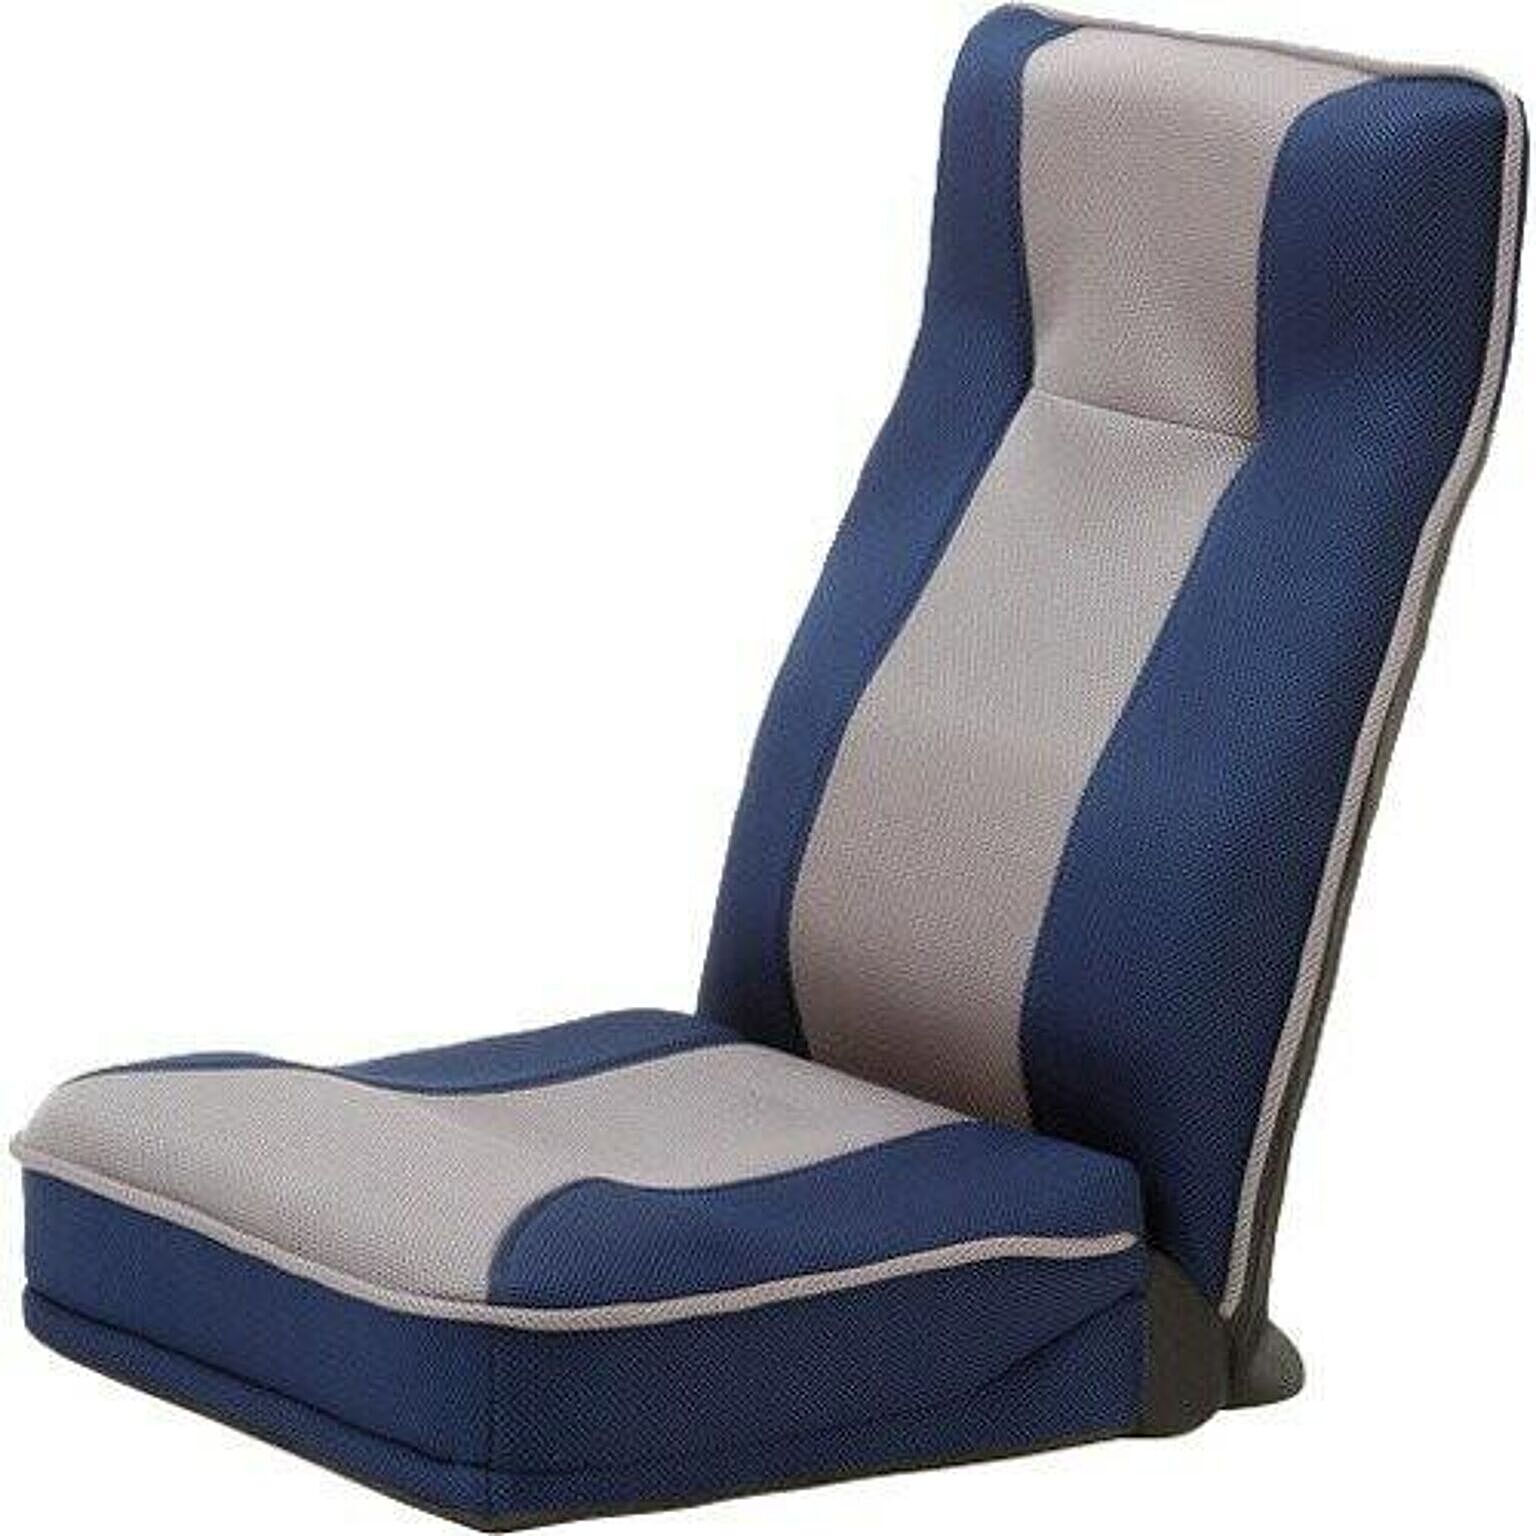 整体師推奨 健康ストレッチ座椅子 ブルー